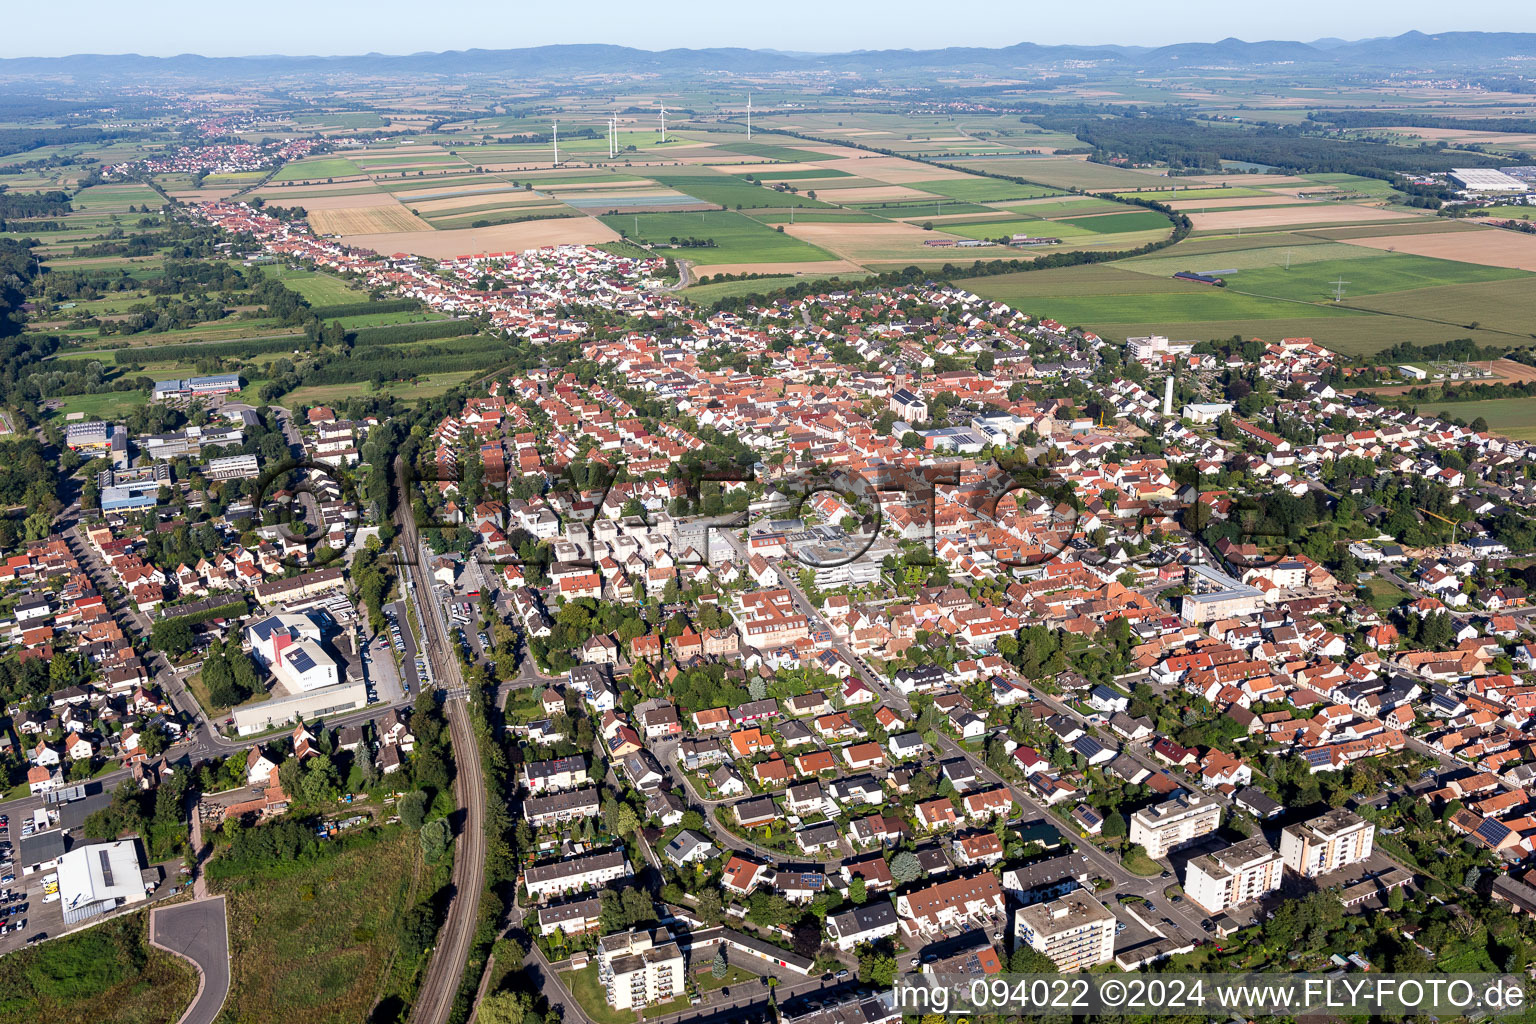 Photographie aérienne de Vue des rues et des maisons des quartiers résidentiels à Kandel dans le département Rhénanie-Palatinat, Allemagne